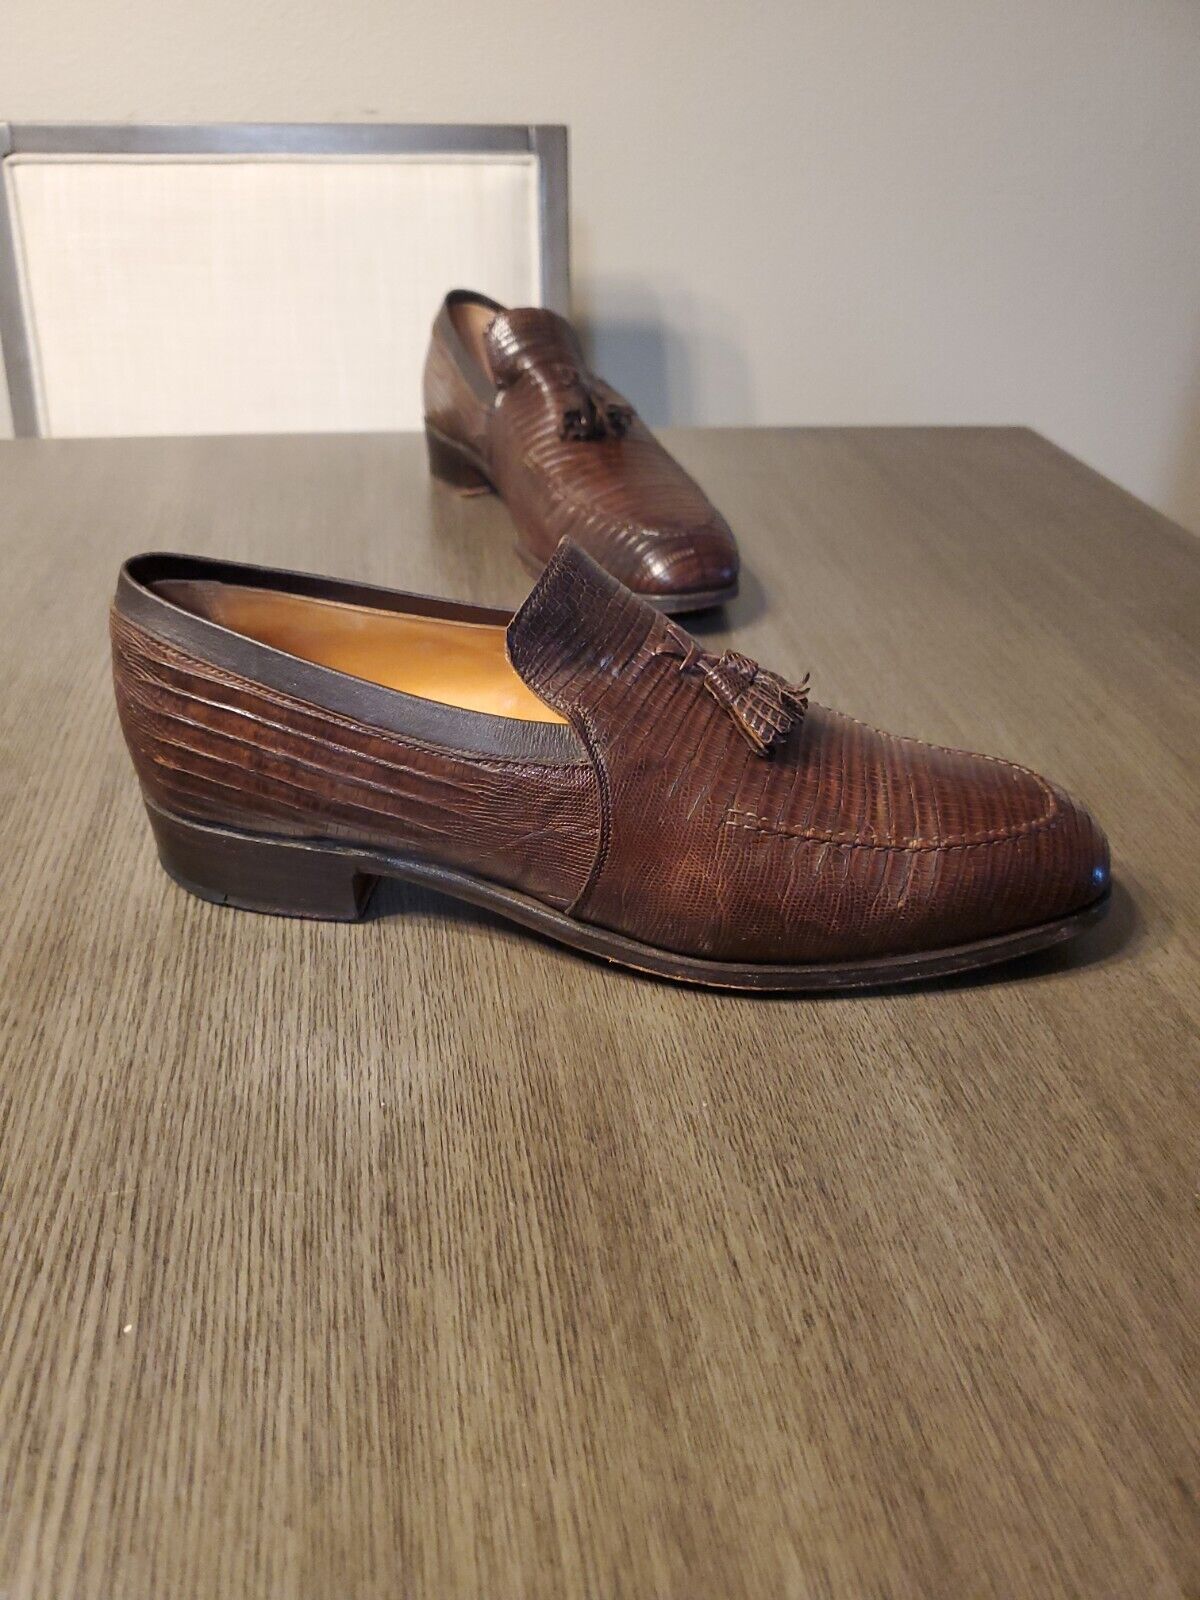 Vintage Nettleton Dark Brown Lizard Skin Tassel Loafers Dress Shoes Men\'s Sz 10D